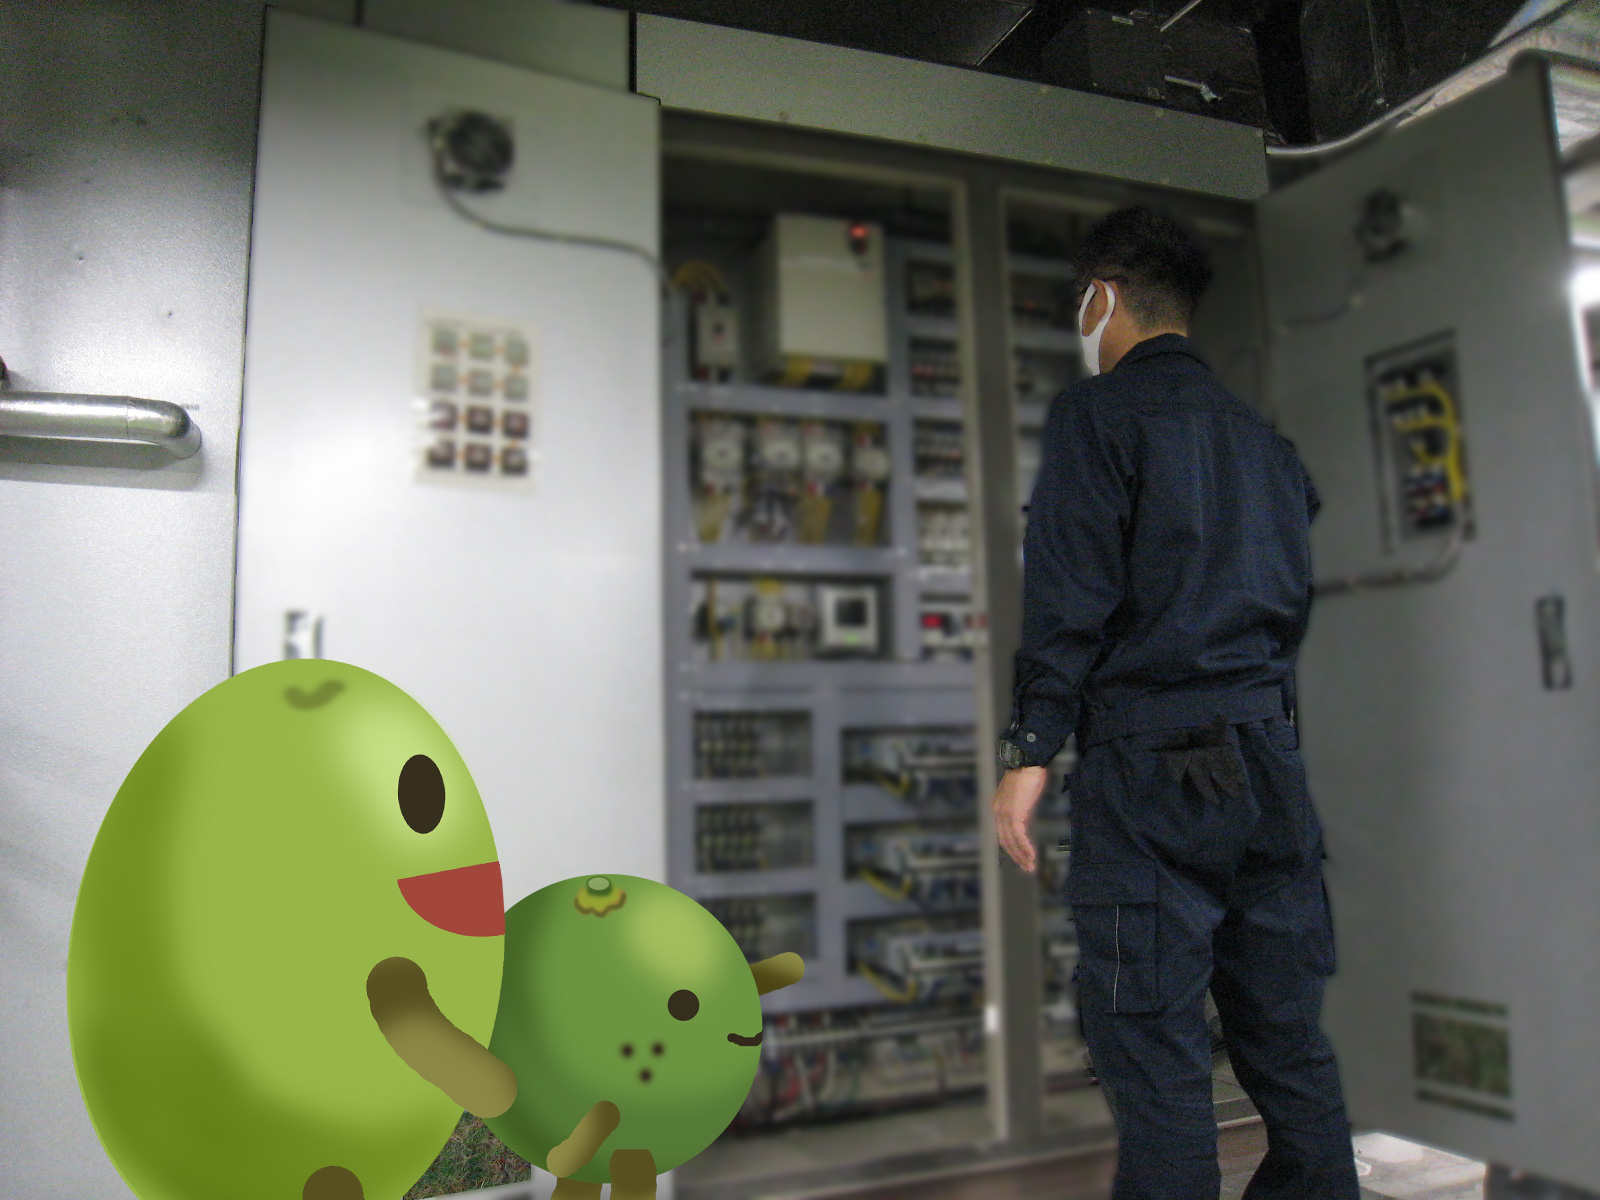 日銀高松支店内の機械室で、大型の機械を点検している職員を撮影した写真